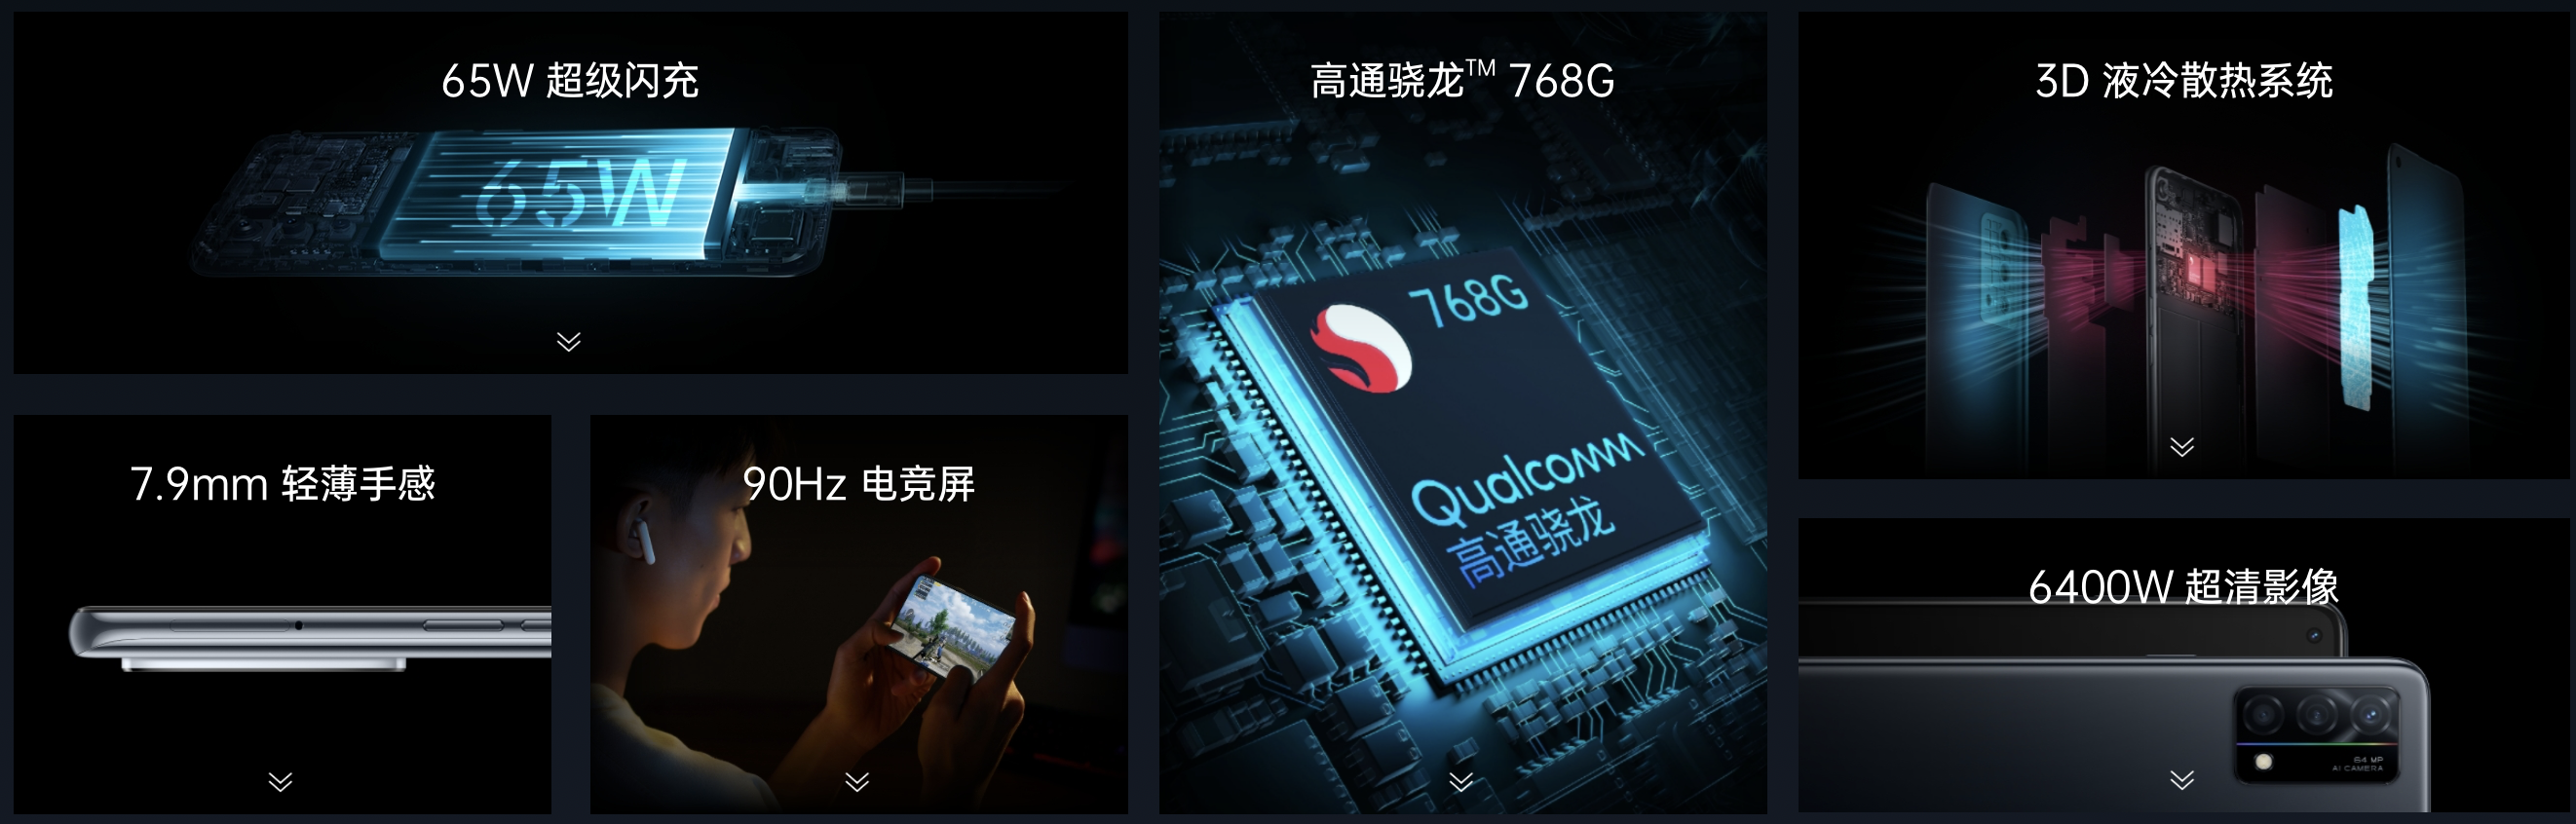 OPPO K9 5G: дисплей на 90 Гц, чип Snapdragon 768G, быстрая зарядка на 65 Вт и тройная камера на 64 МП за $310